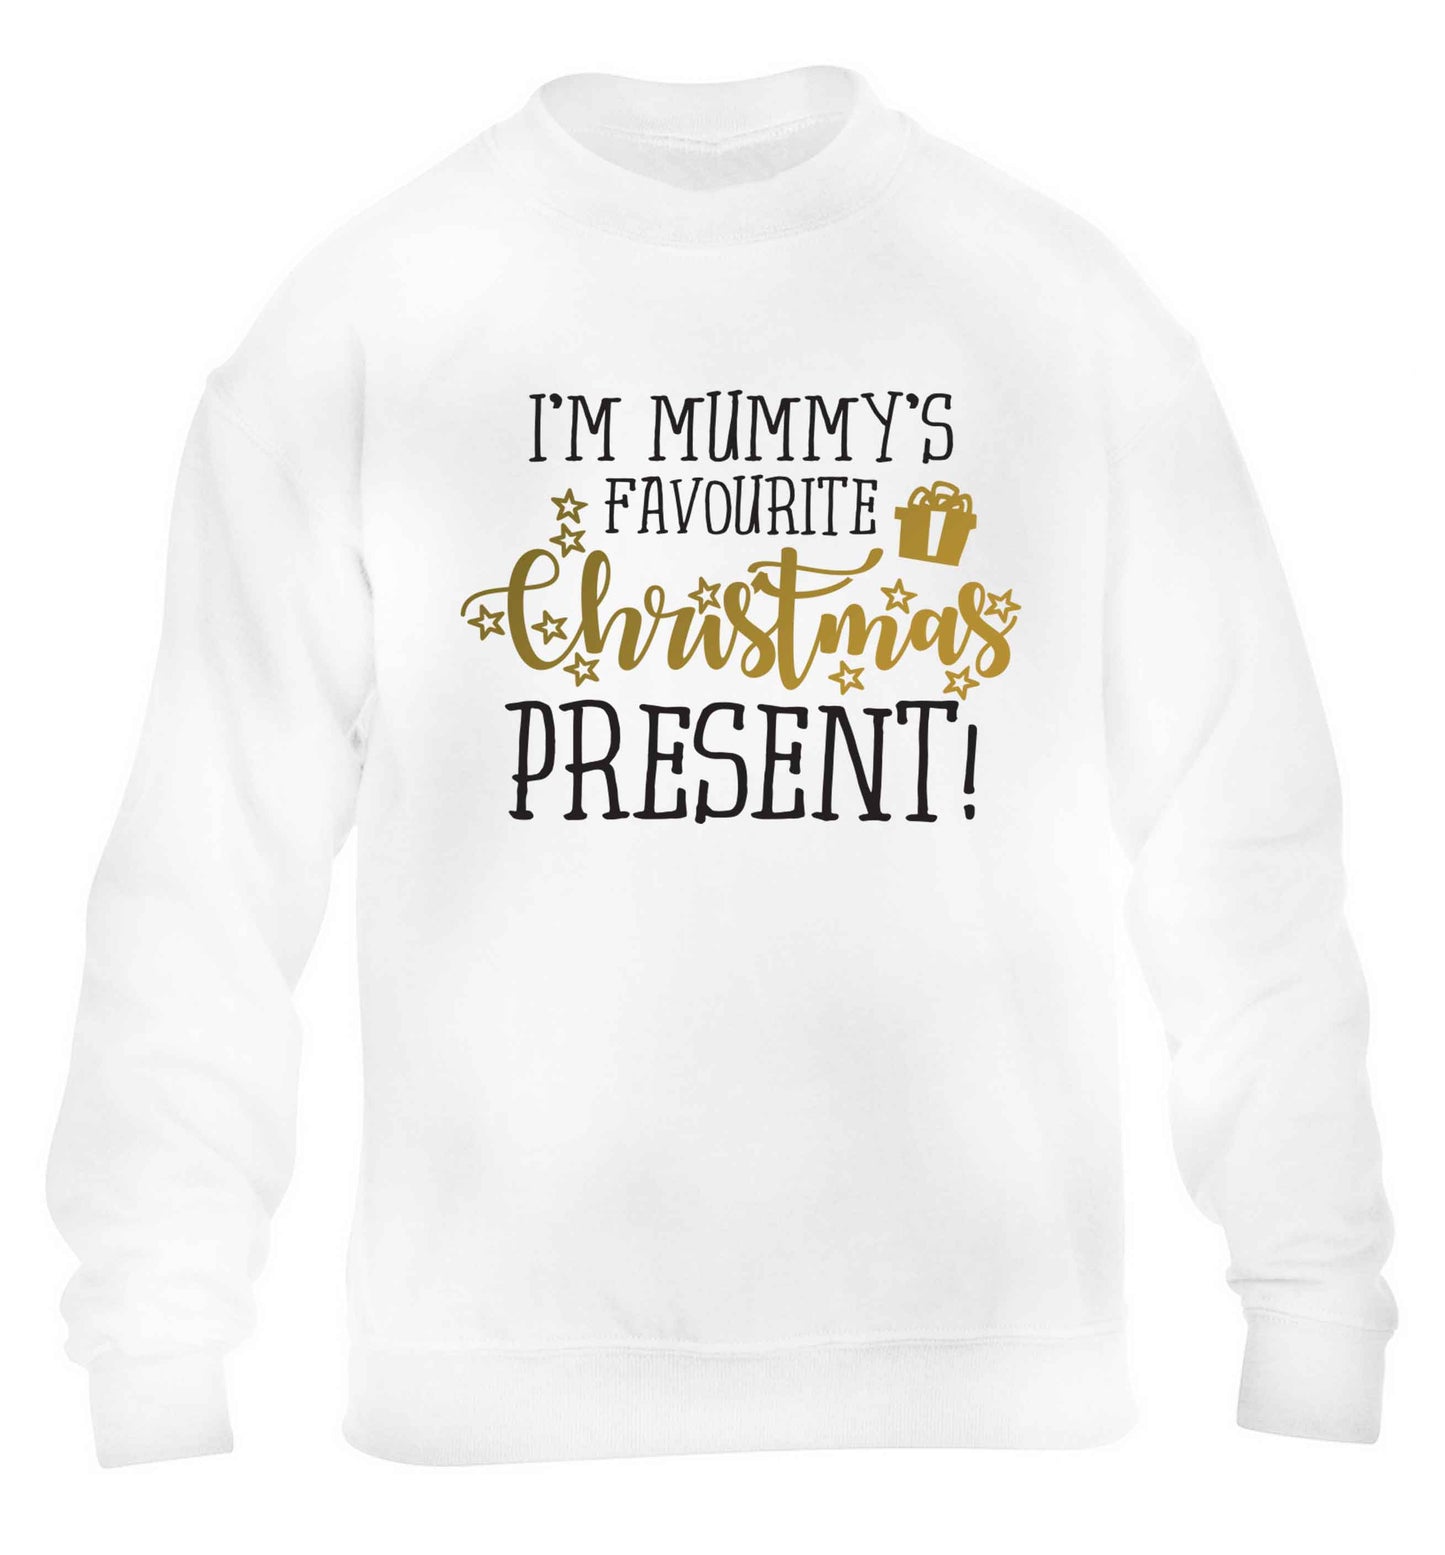 I'm Mummy's favourite Christmas present children's white sweater 12-13 Years